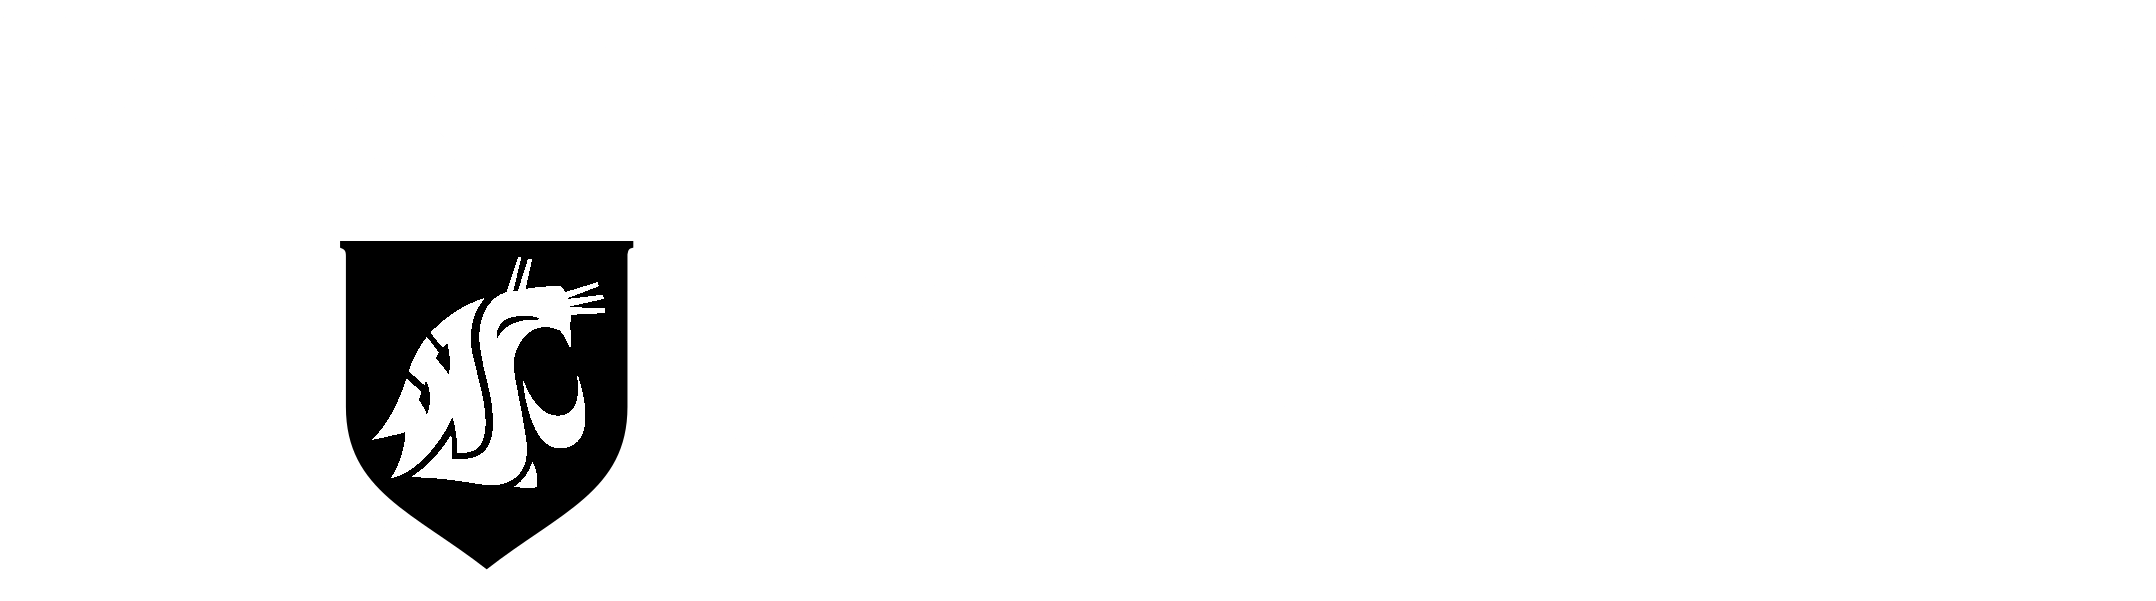 Washington State University Logo Black And White - Washington State University (2400x750)